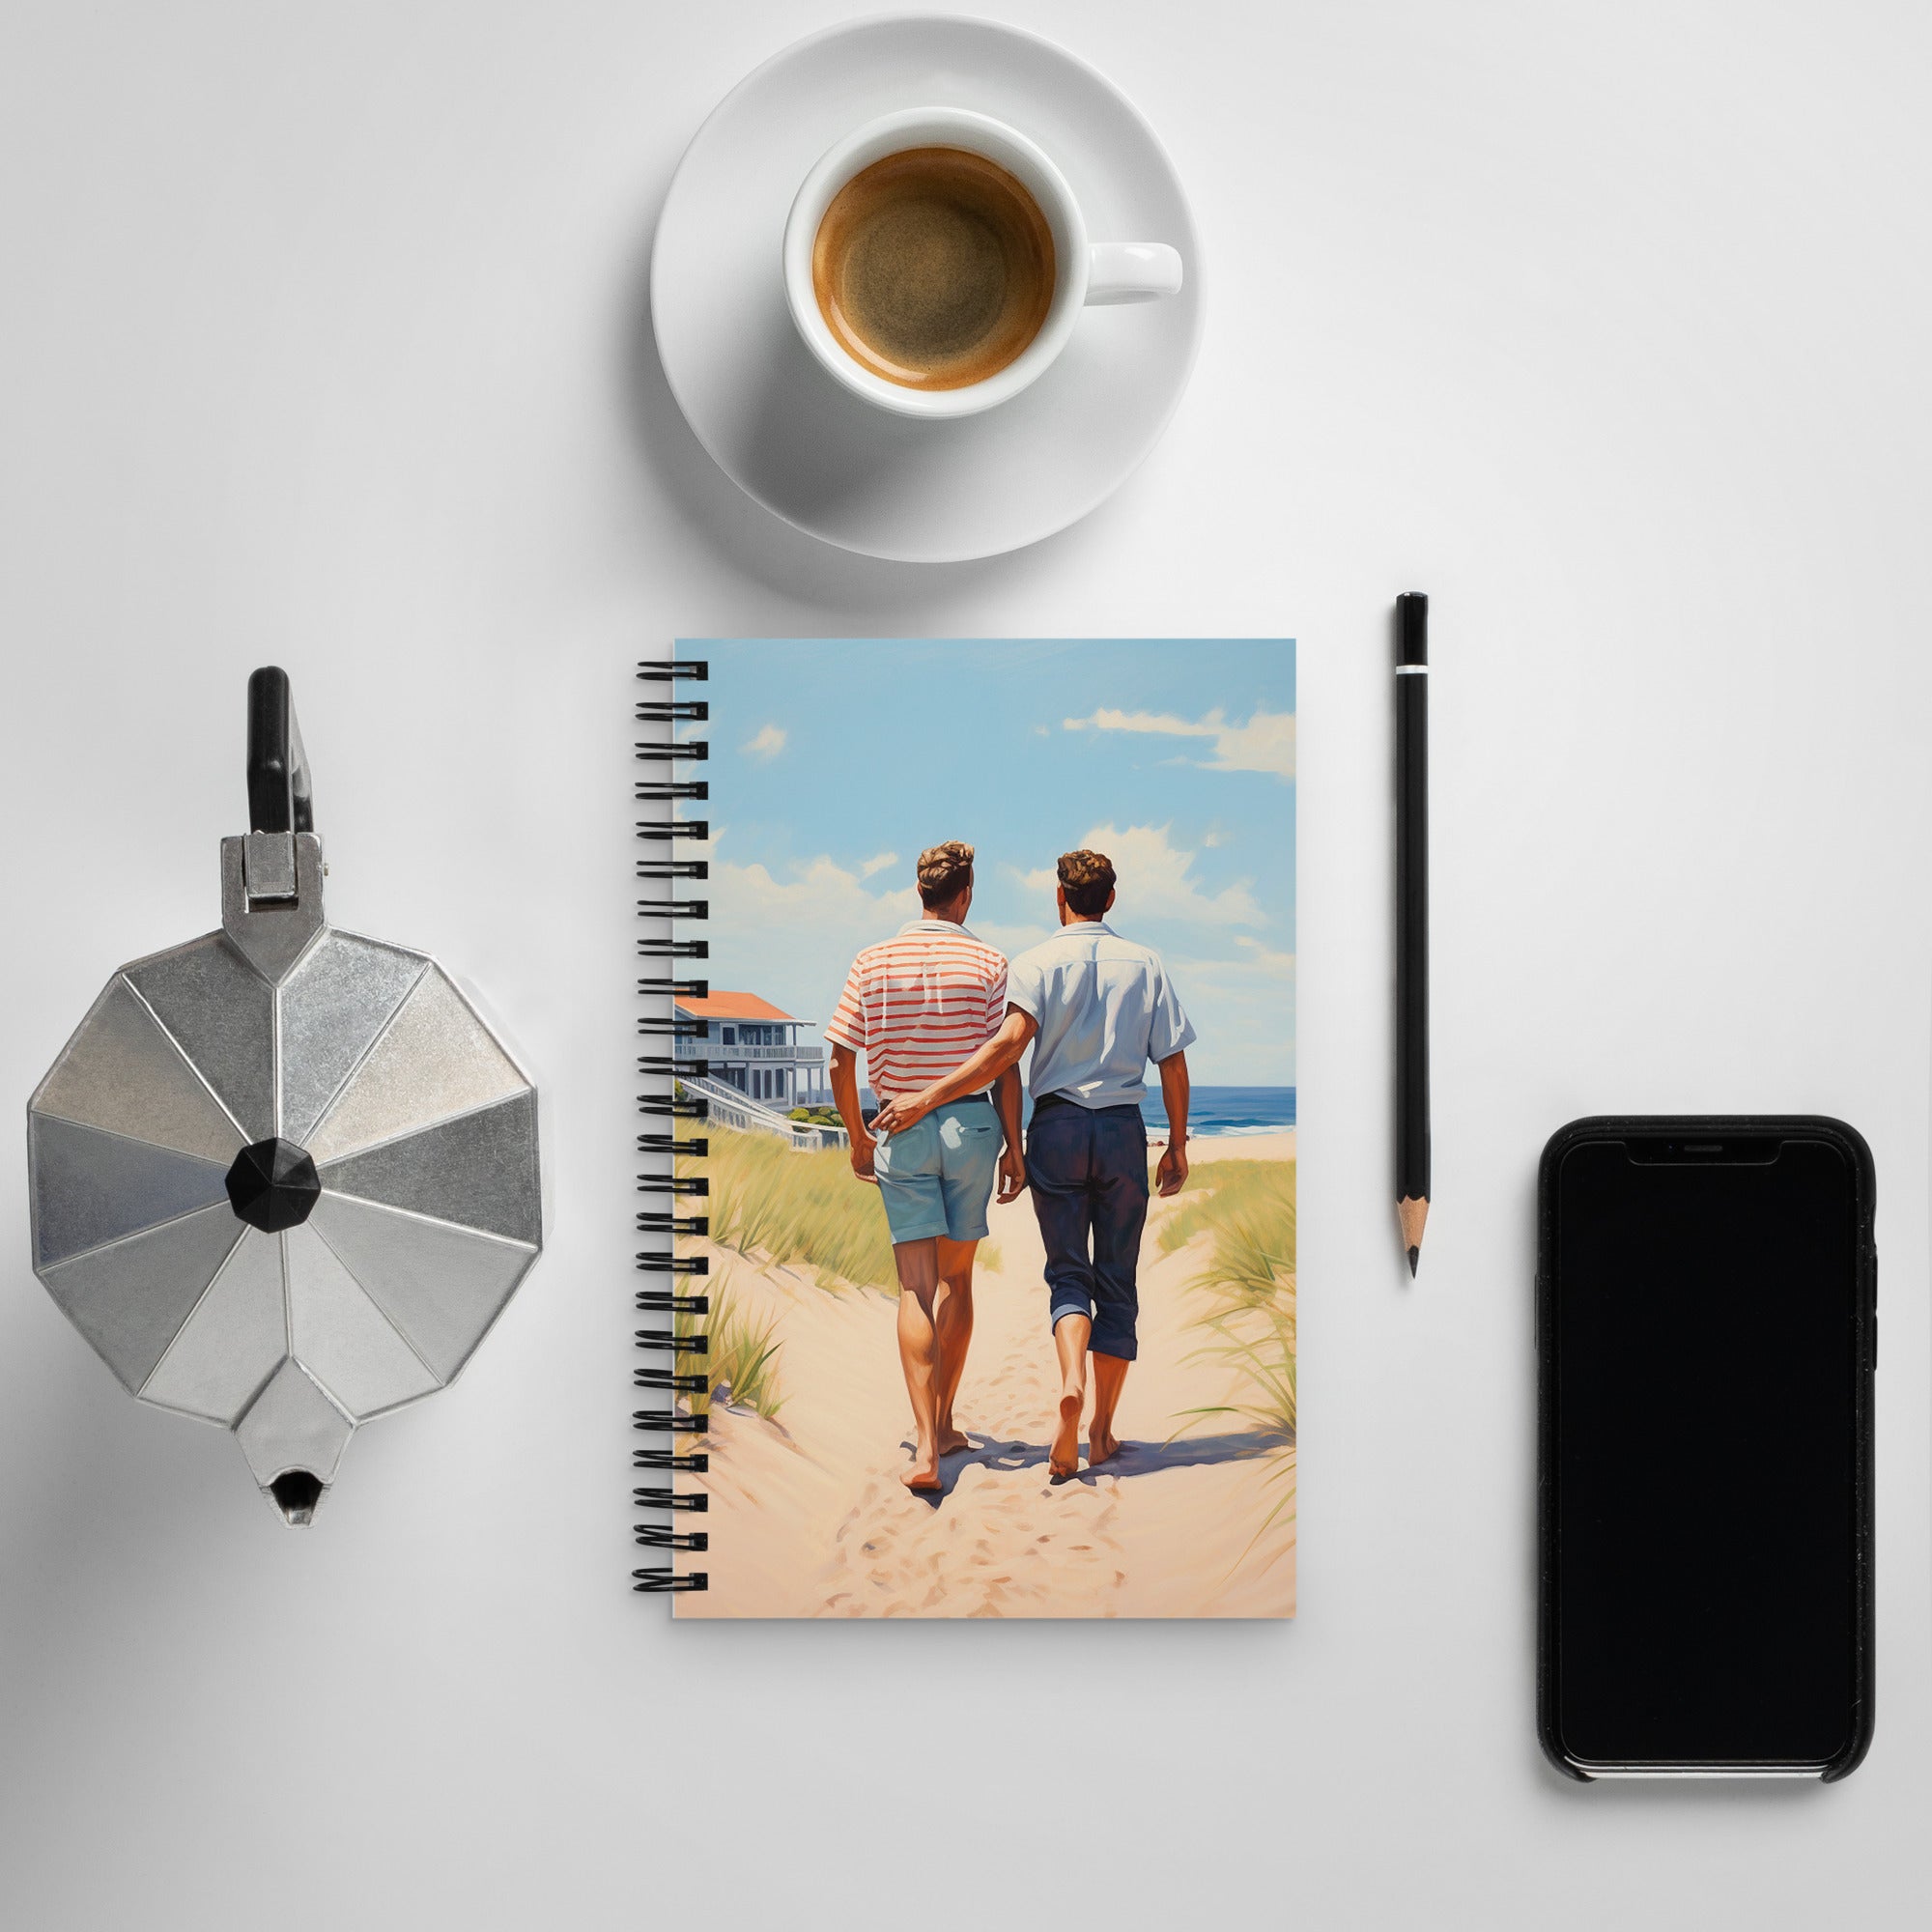 Cuaderno - Sunny Stroll by the Beach | Drese Art